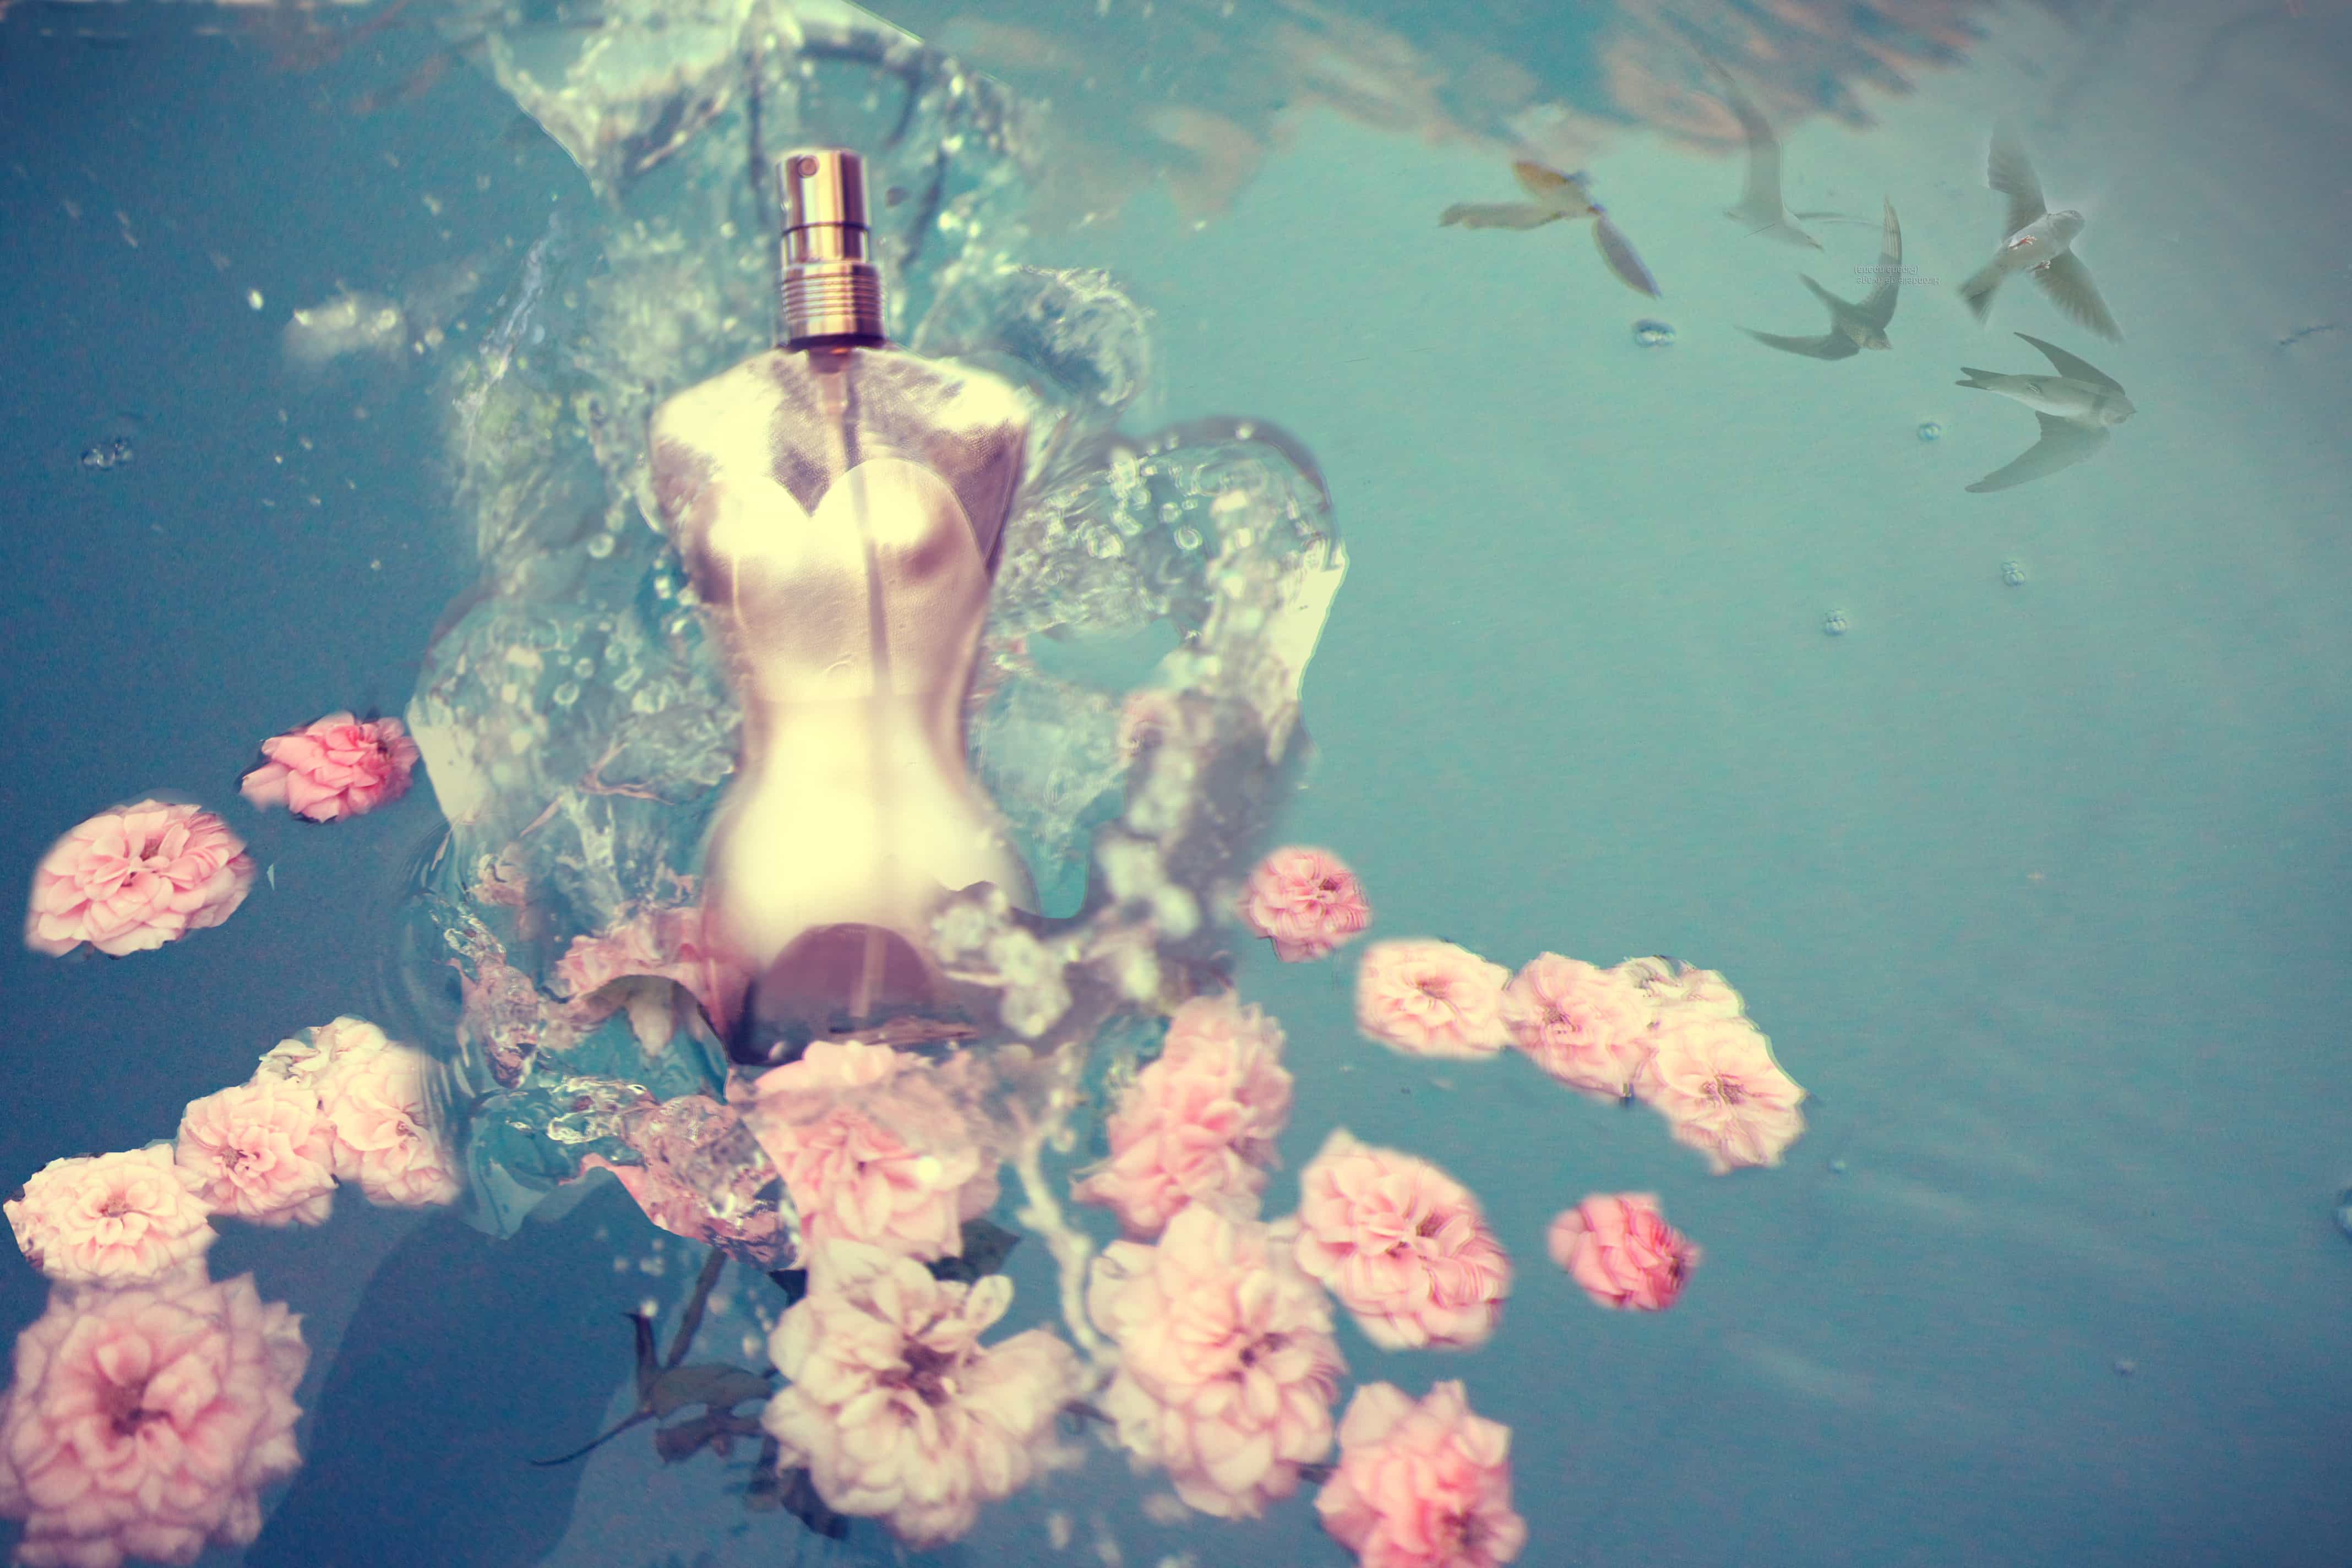 Manuel C. Photography: Parfum. CC BY 2.0